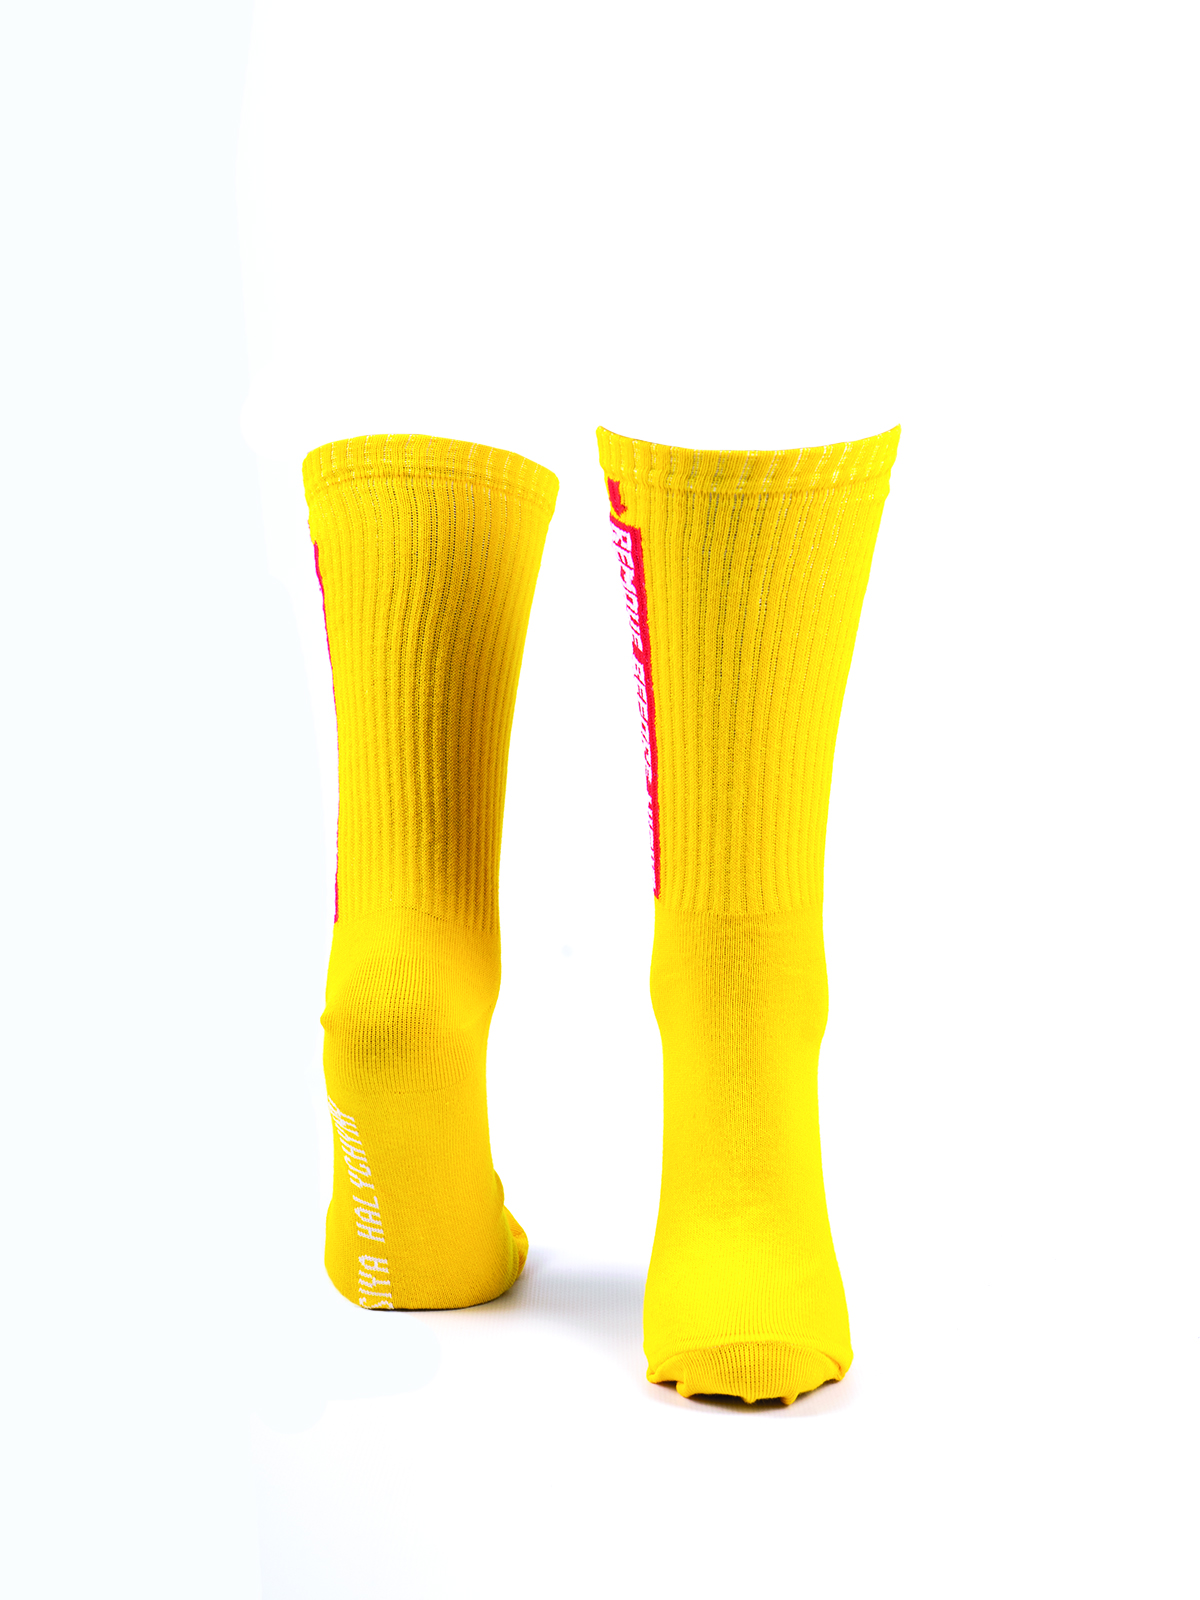 Шкарпетки Remove Before Night. Колір жовтий. Матеріал: 95% бавовна, 5% еластан  Товар обміну та поверненню не підлягає згідно закону.